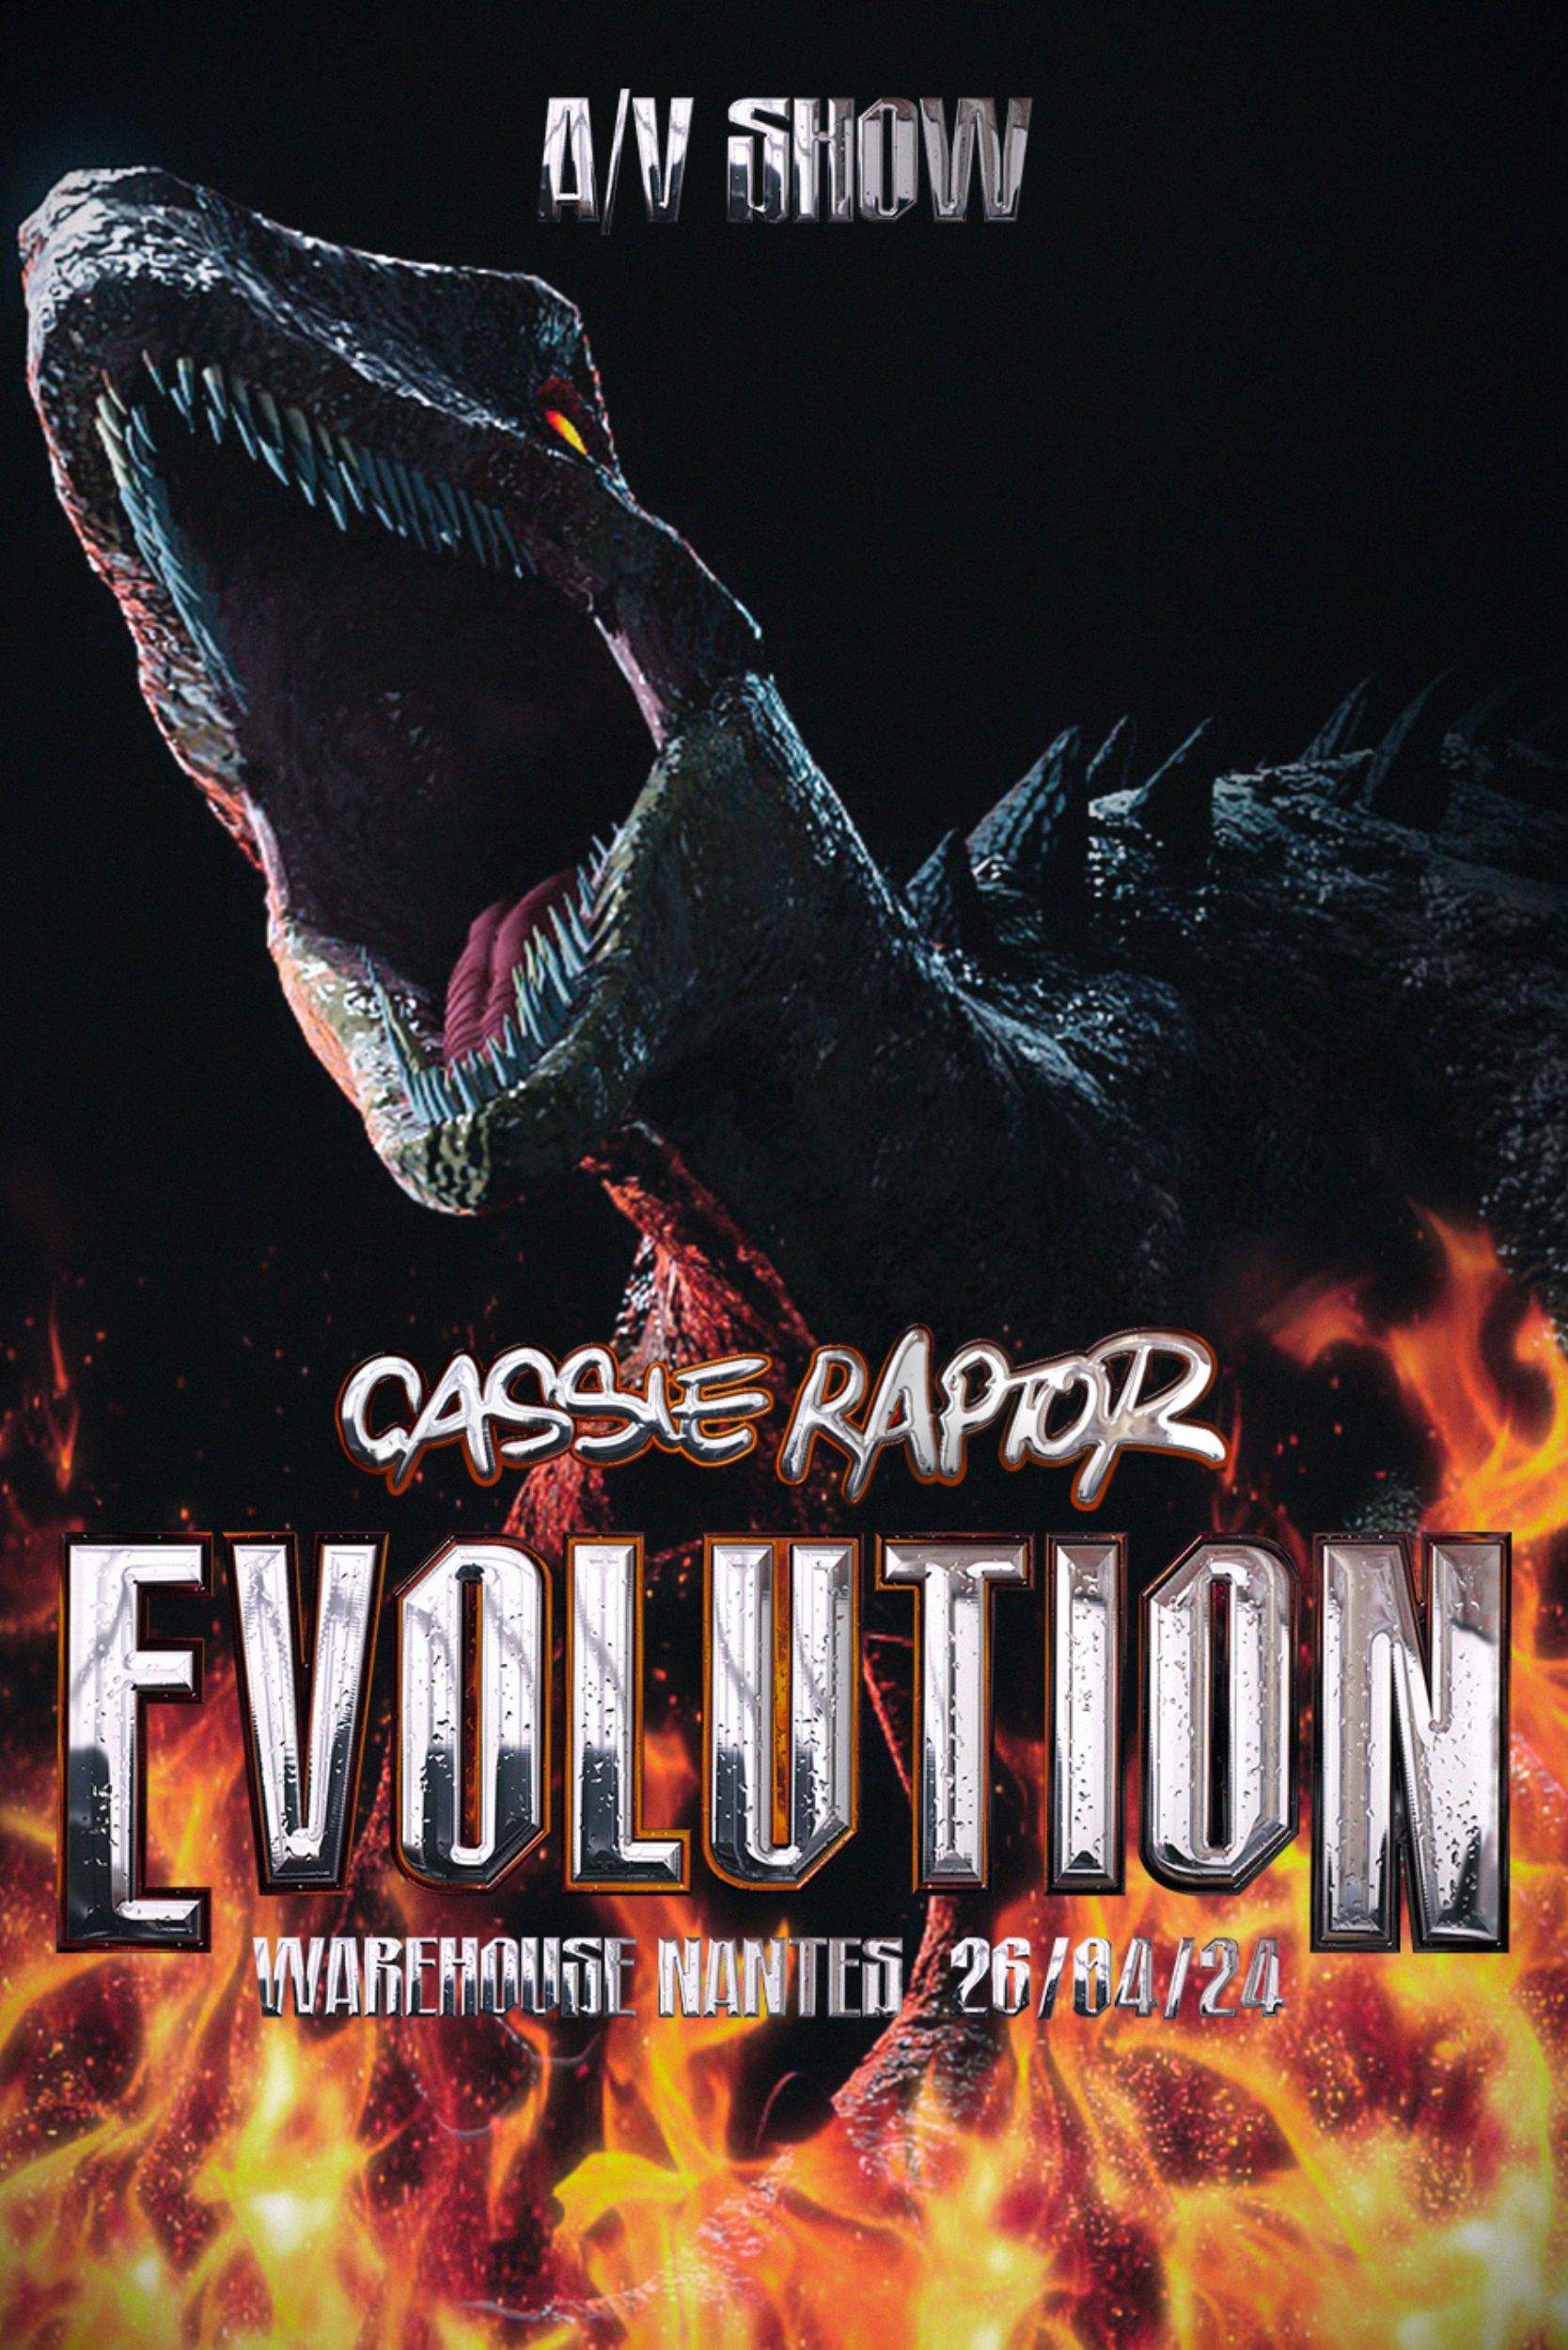 Cassie Raptor PRÉSENTE 'EVOLUTION A/V SHOW' - Página frontal